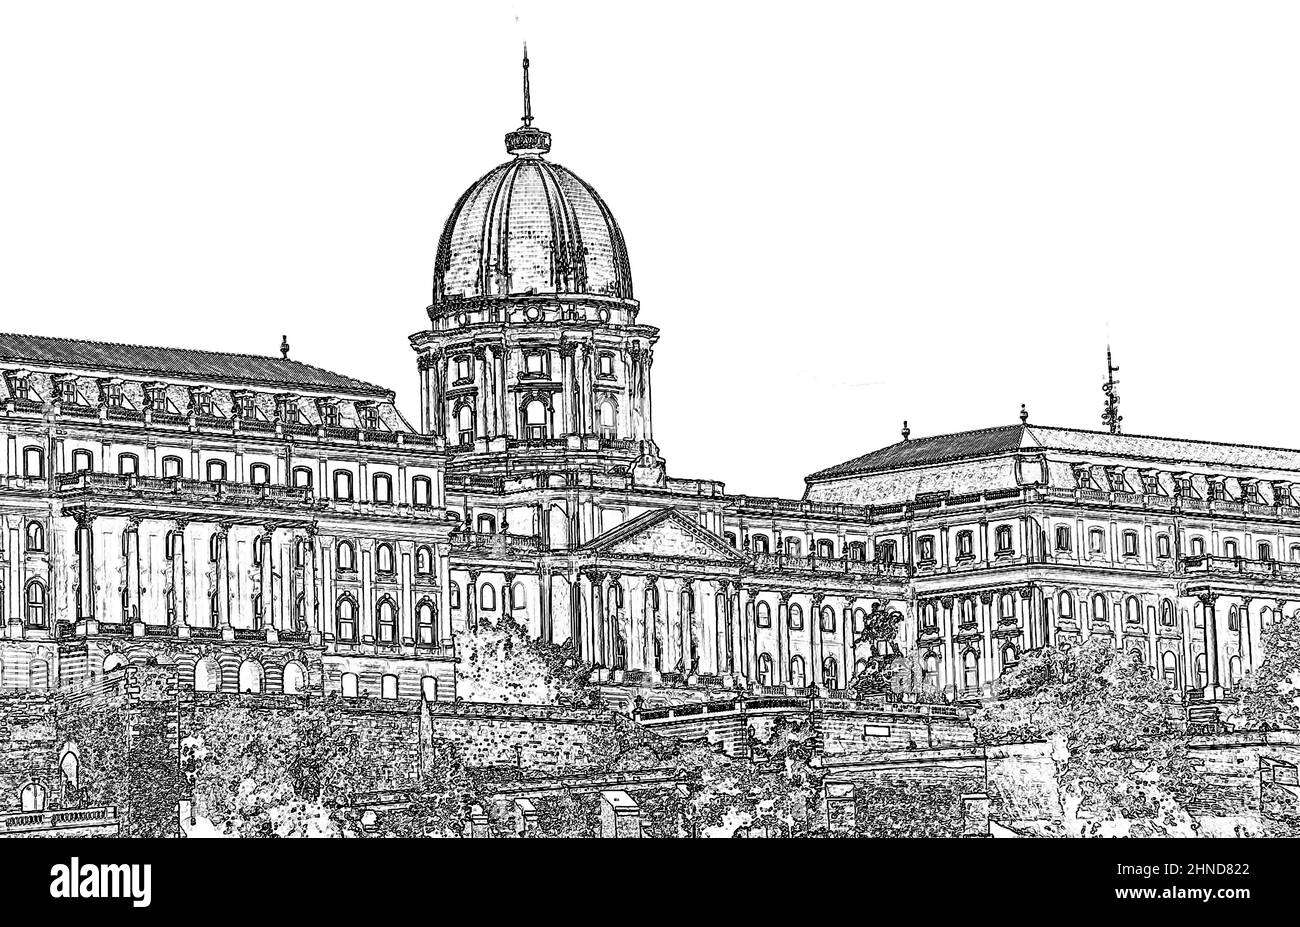 Buda castle palace, Budapest, Hungary  (illustration) Stock Photo